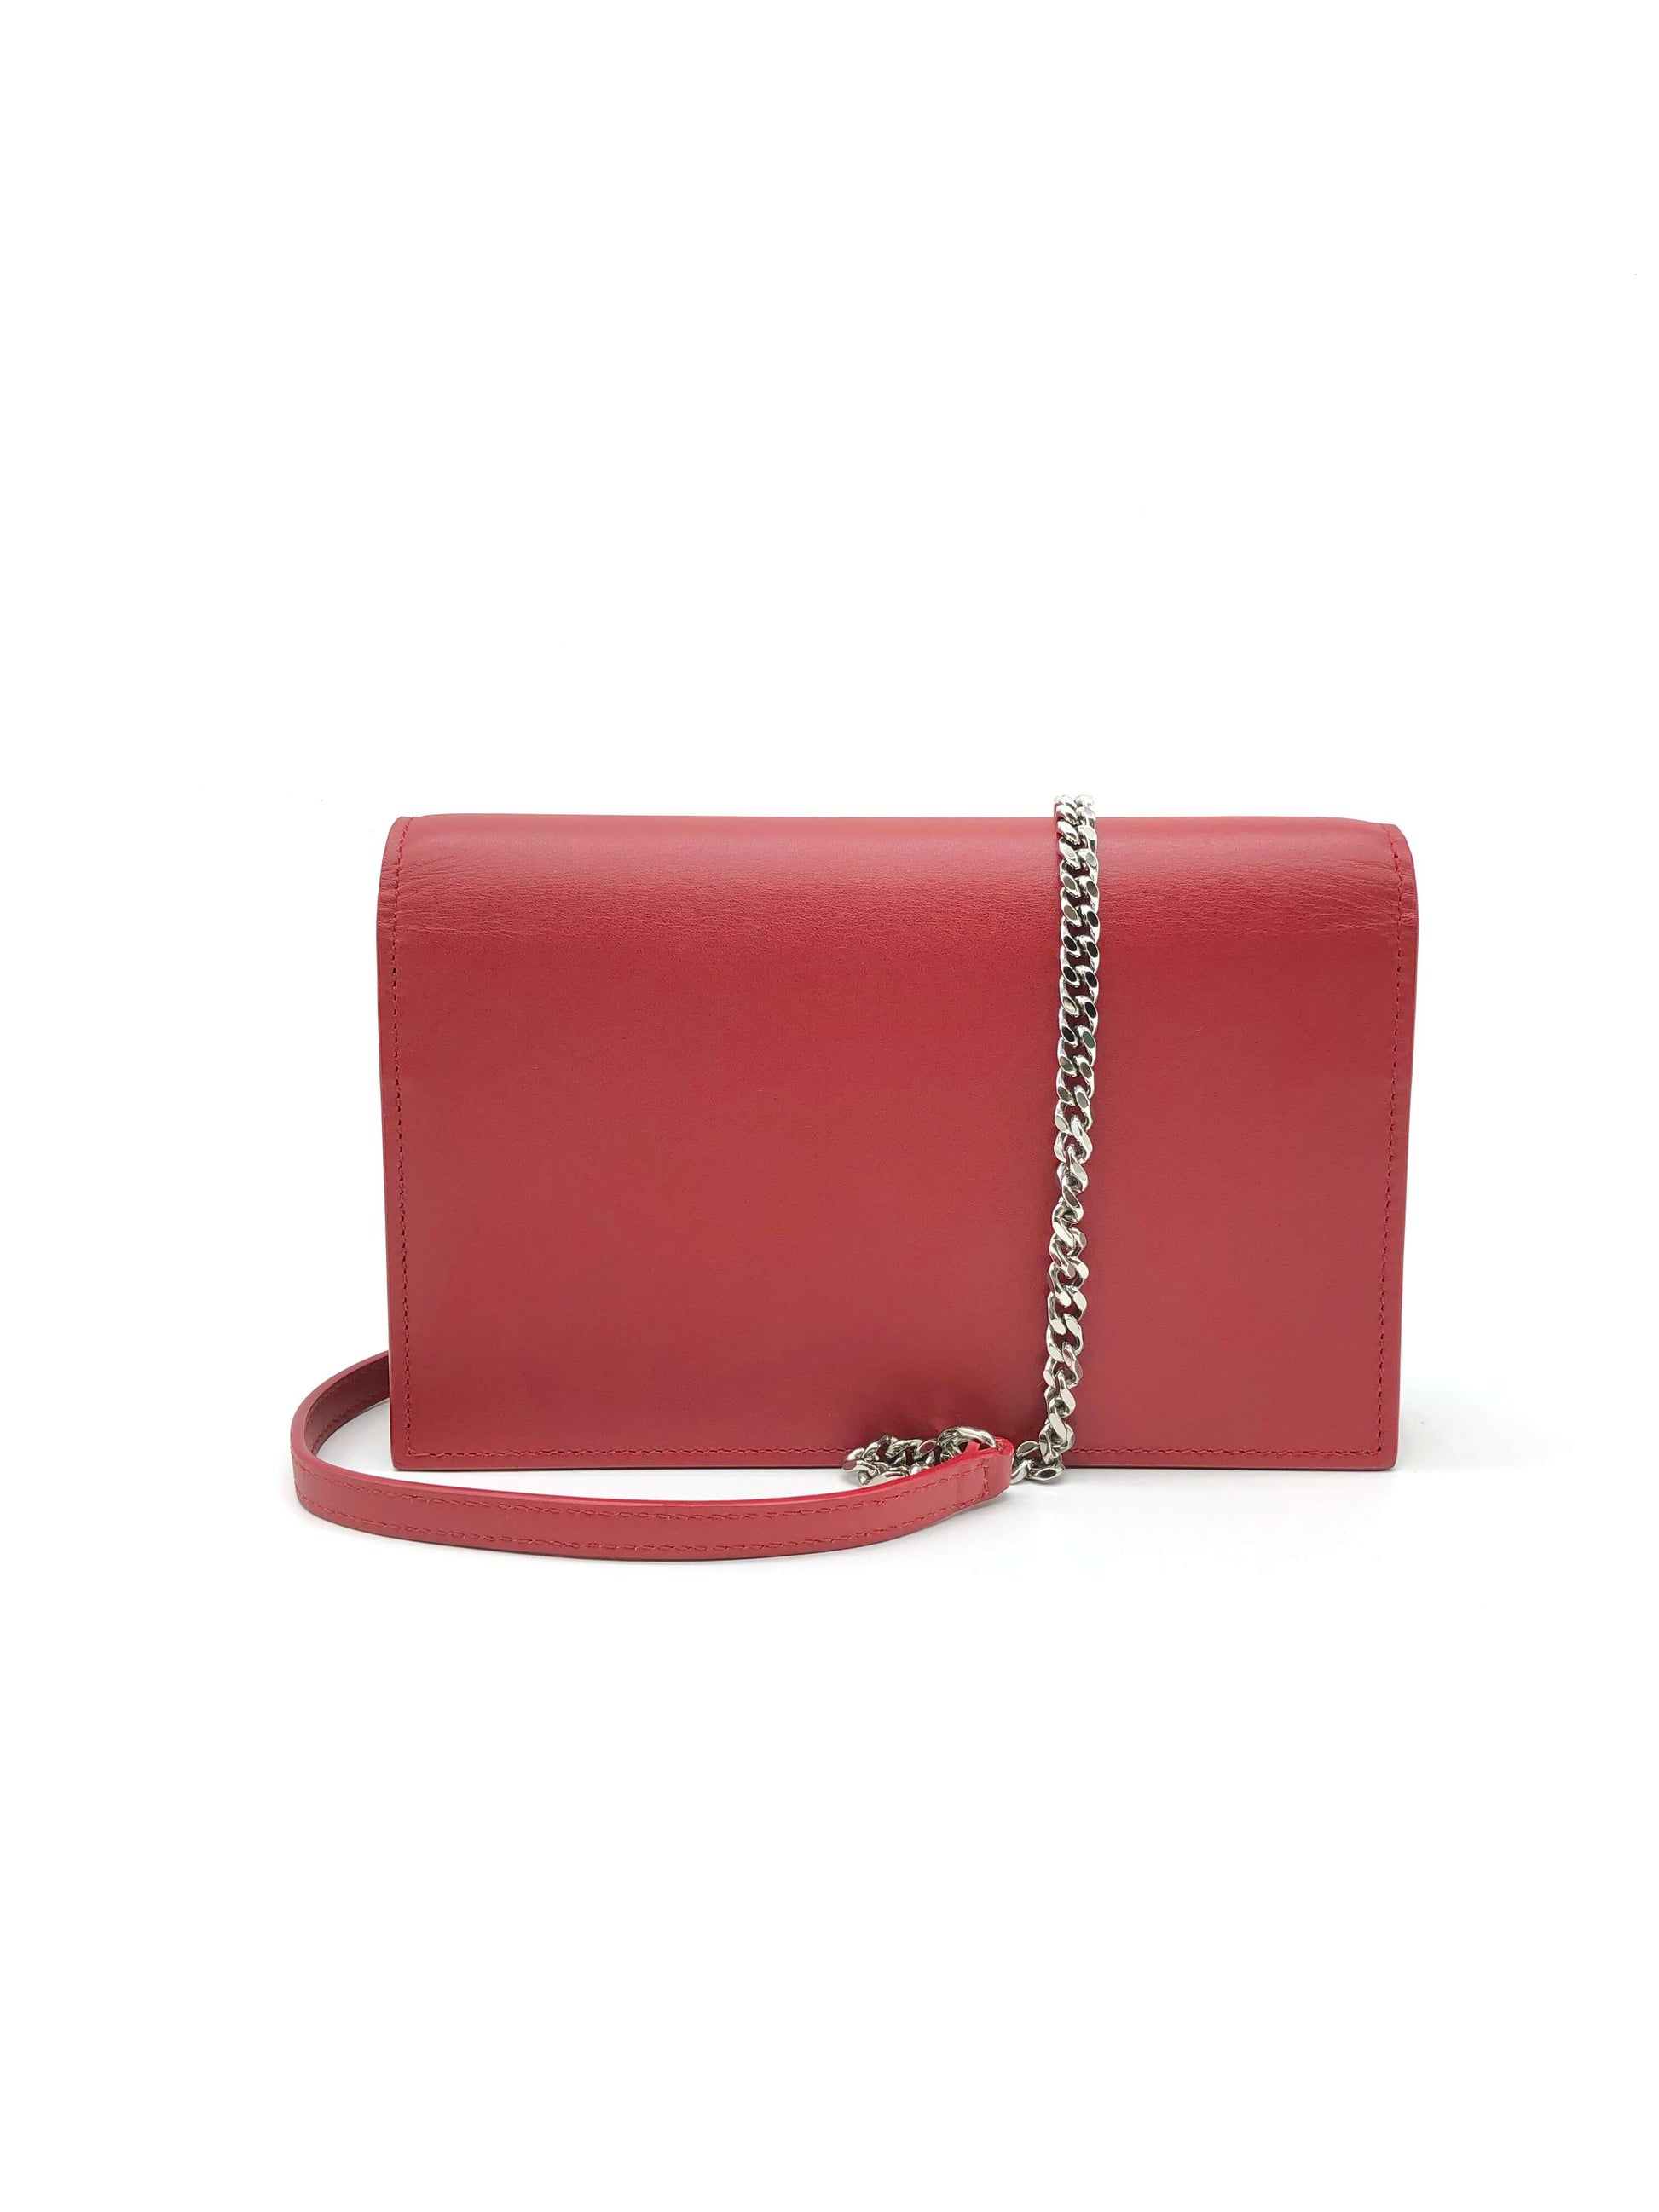 Yves Saint Laurent Red Kate Tassel Bag